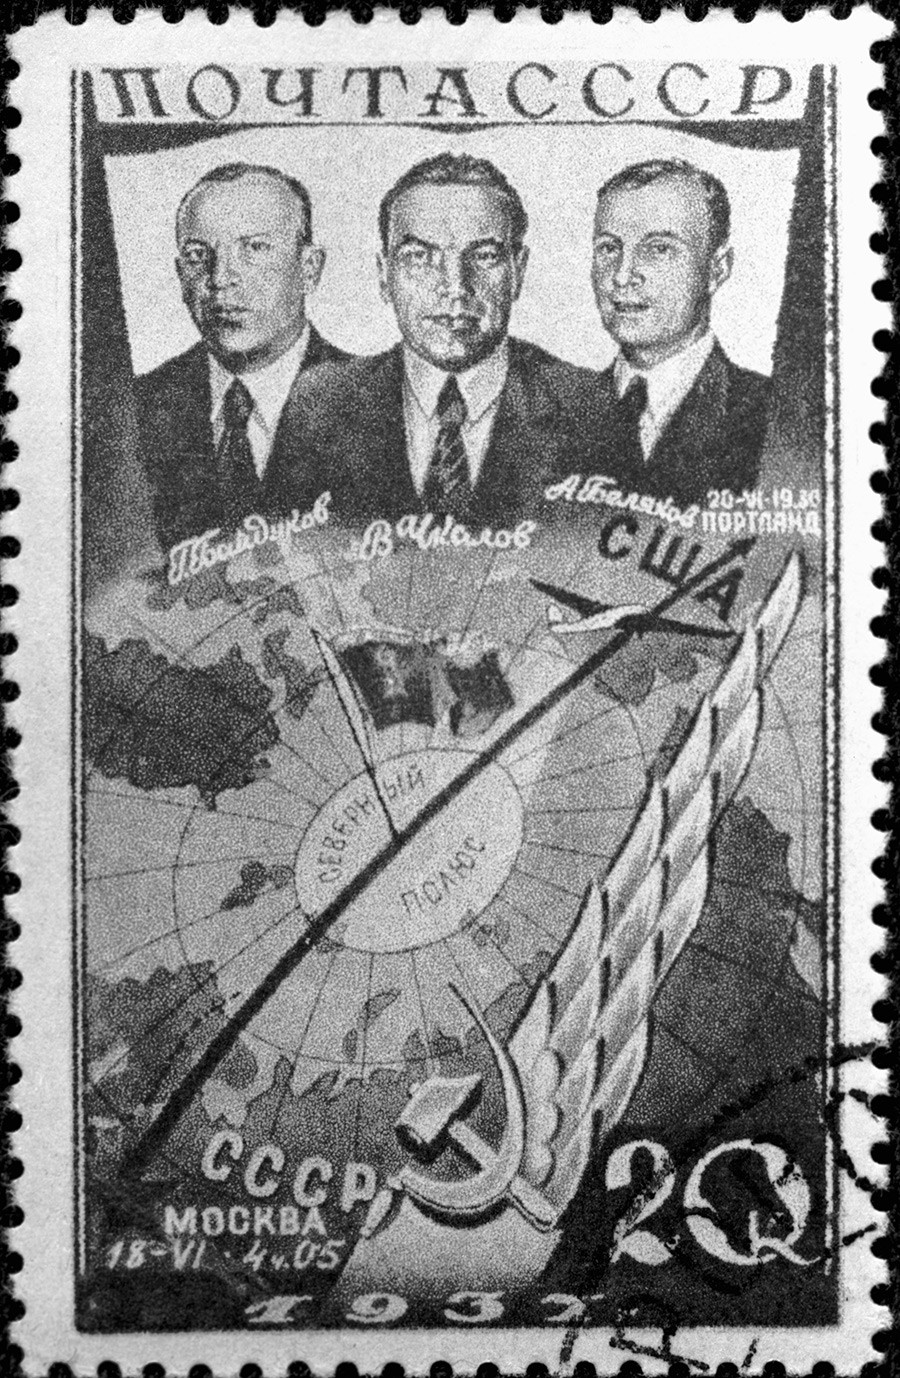 モスクワー北極ーポートランド (米国)の超長距離飛行を記念に発行された切手。